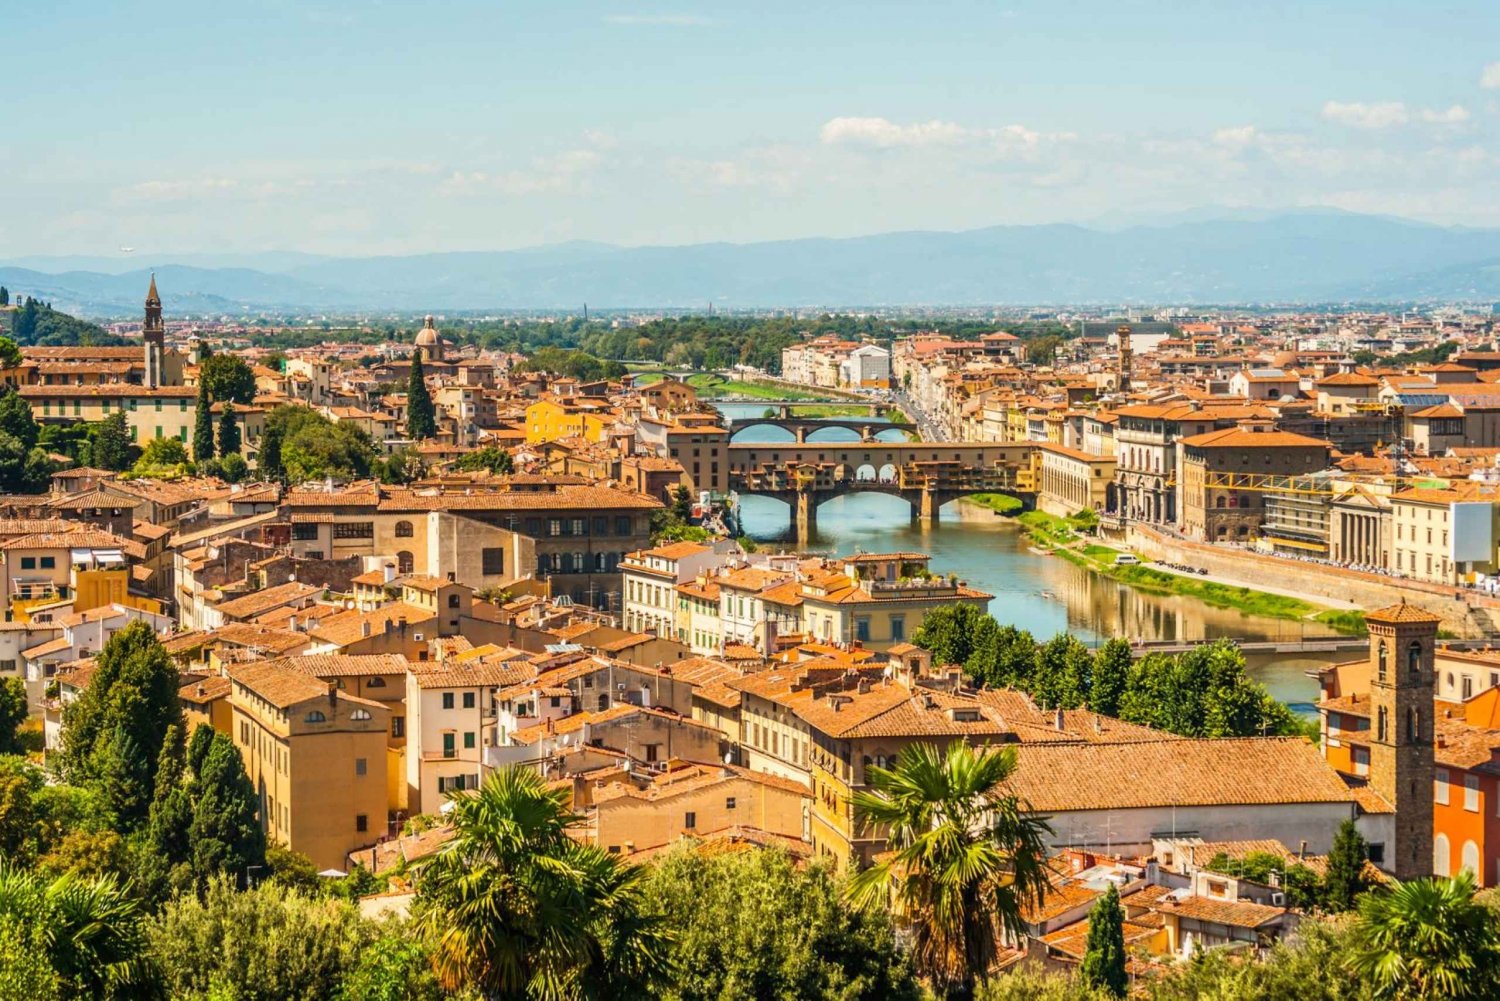 Da Roma: treno per Firenze e biglietti salta fila per gli Uffizi